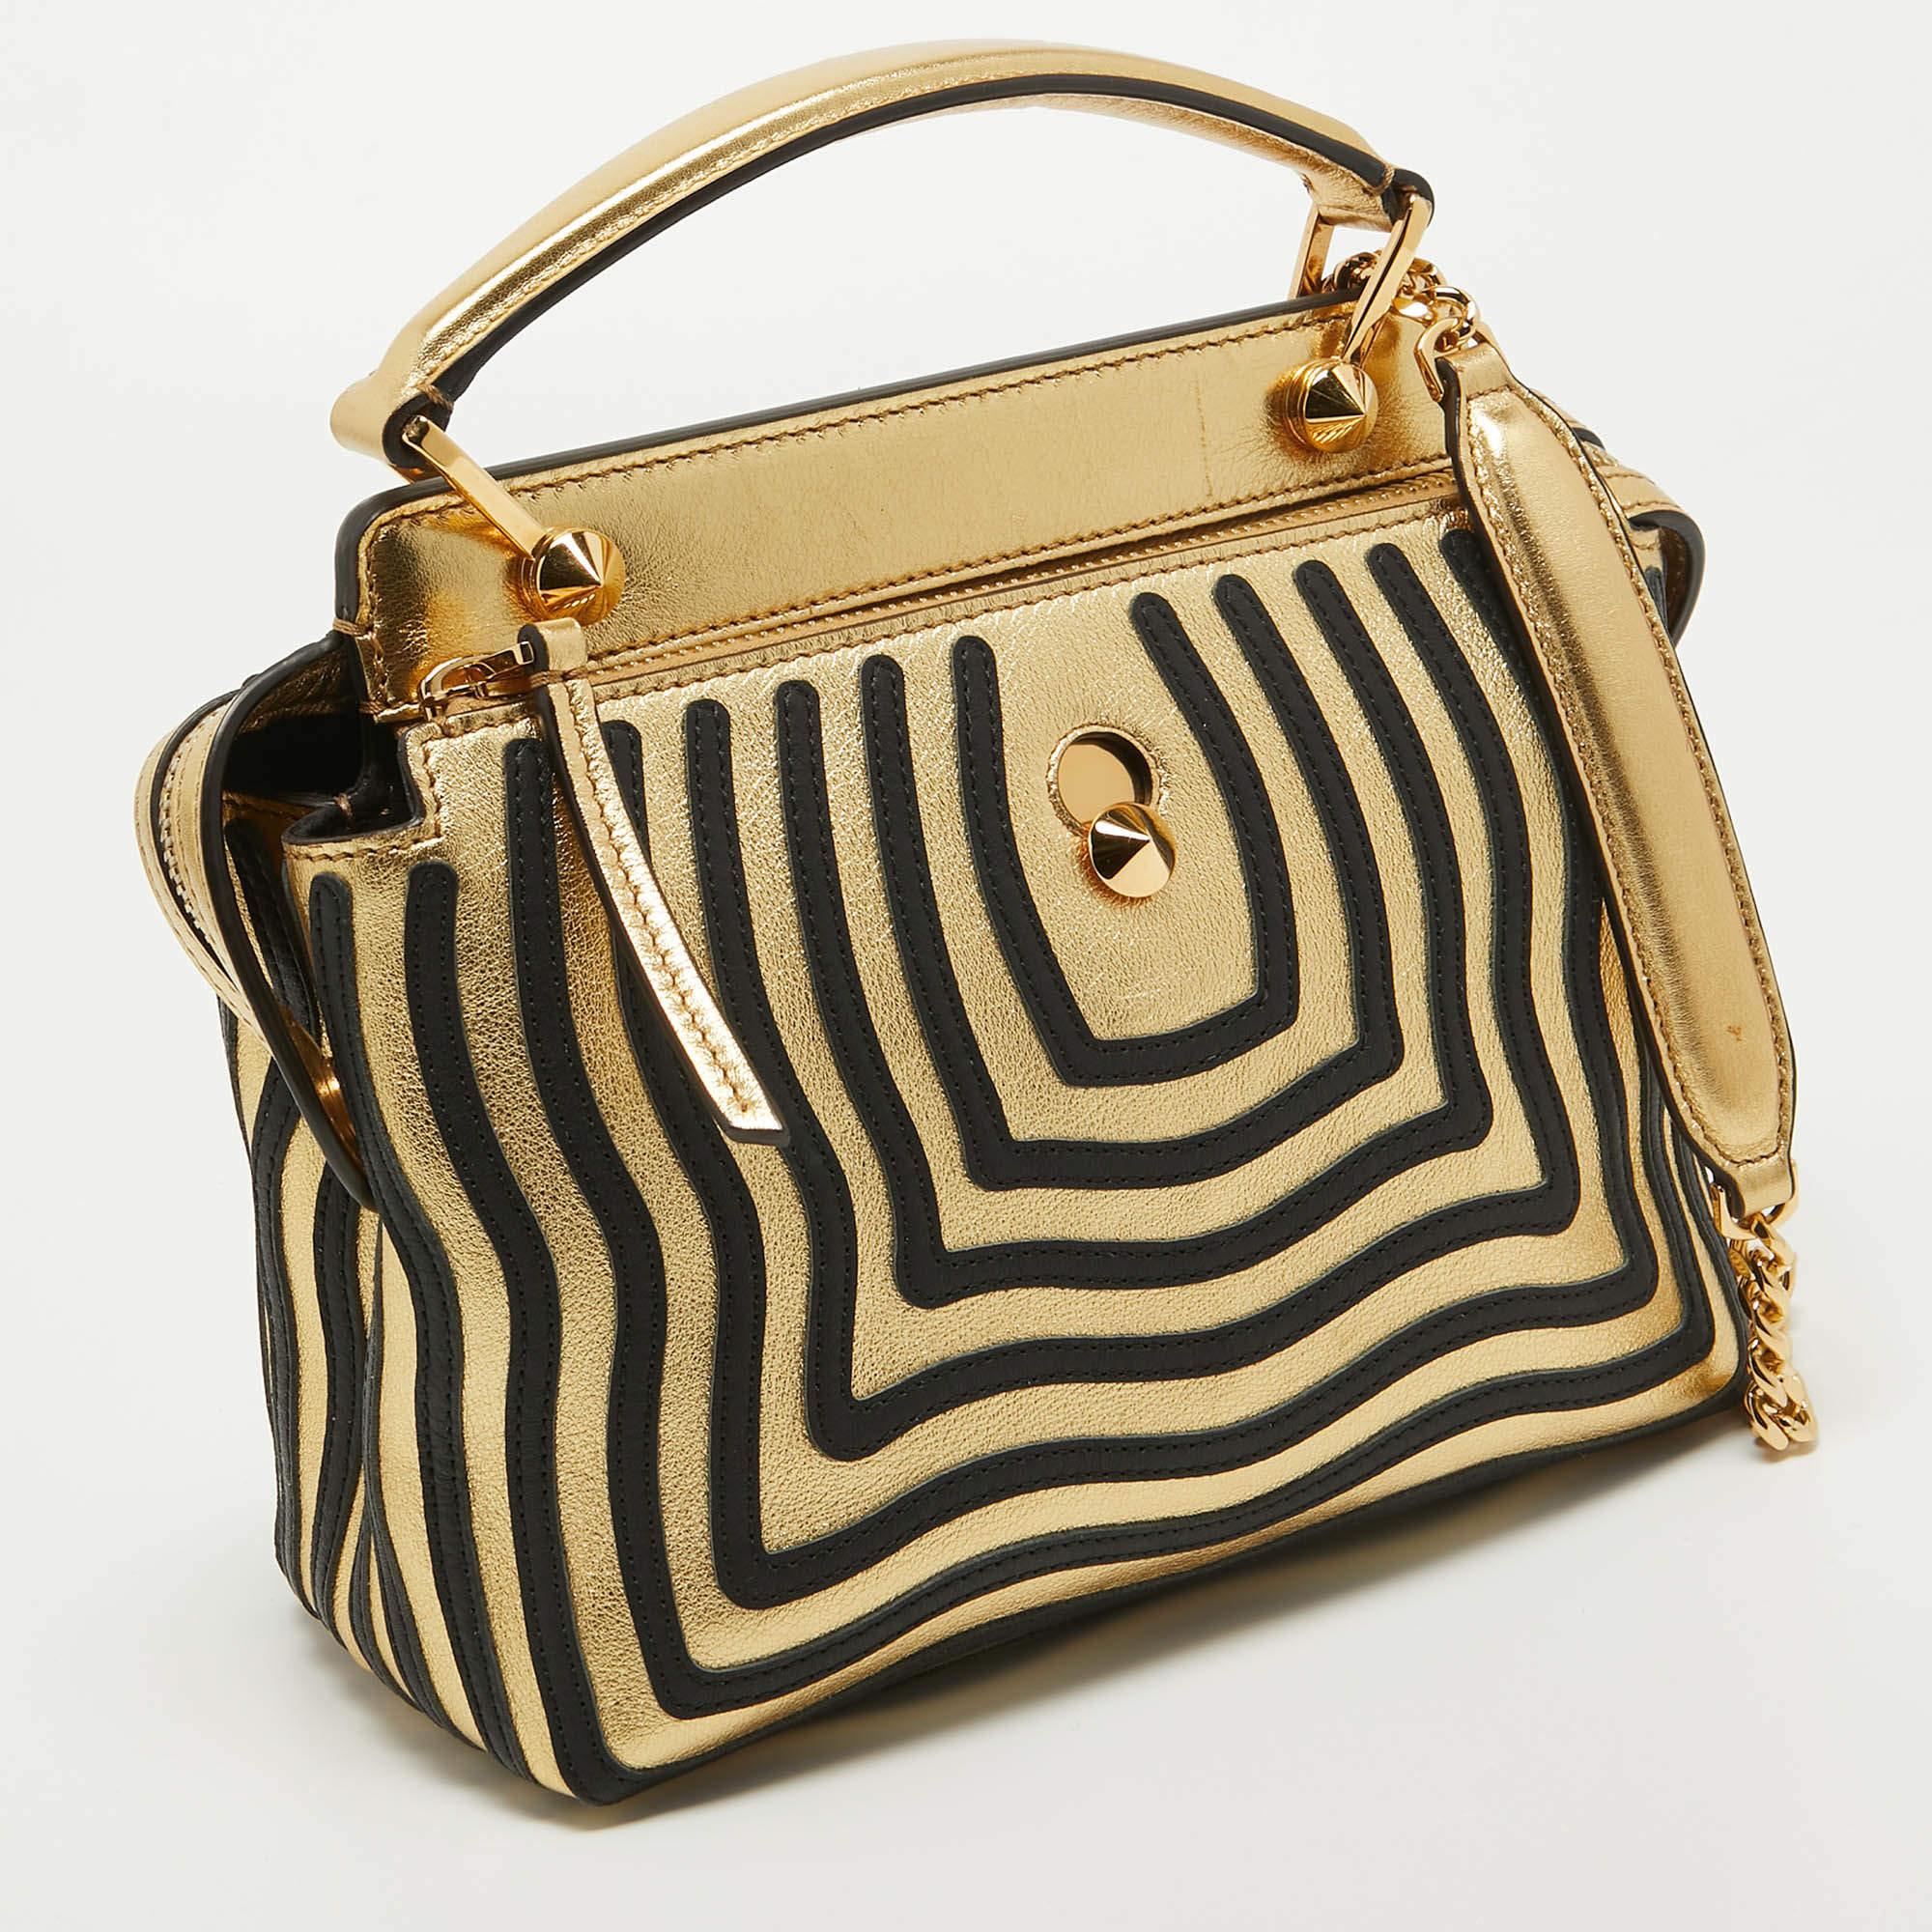 Fendi Gold/Black Leather Small Gold Edition Dotcom Click Top Handle Bag In Good Condition For Sale In Dubai, Al Qouz 2